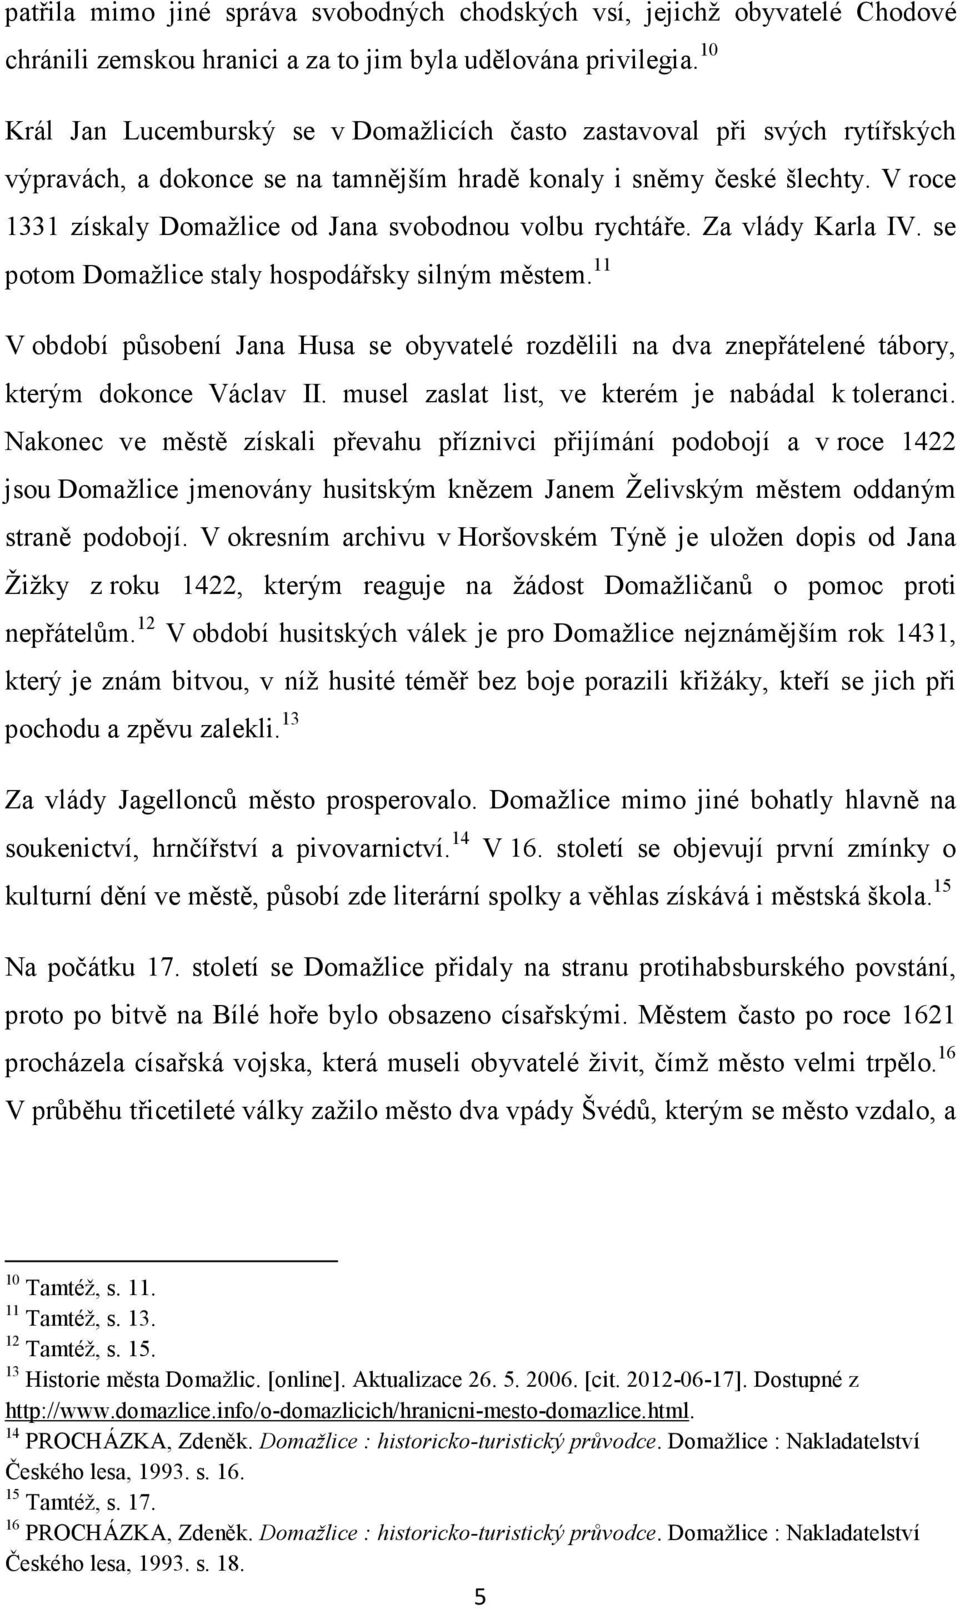 Historie vybraných pomníků českých spisovatelů v Domažlicích - PDF Stažení  zdarma